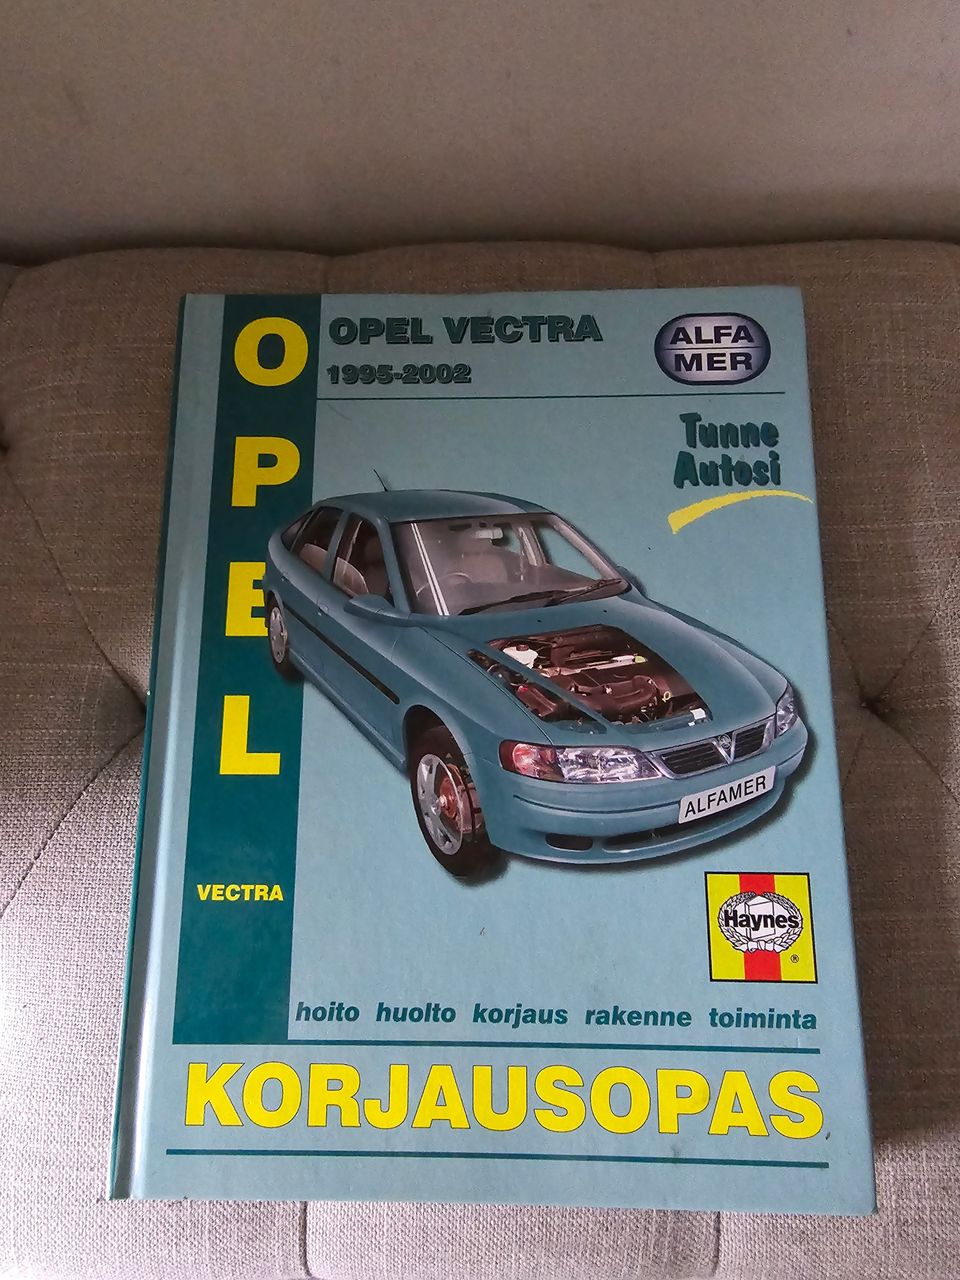 Opel Vectra korjausopas 1995-2002